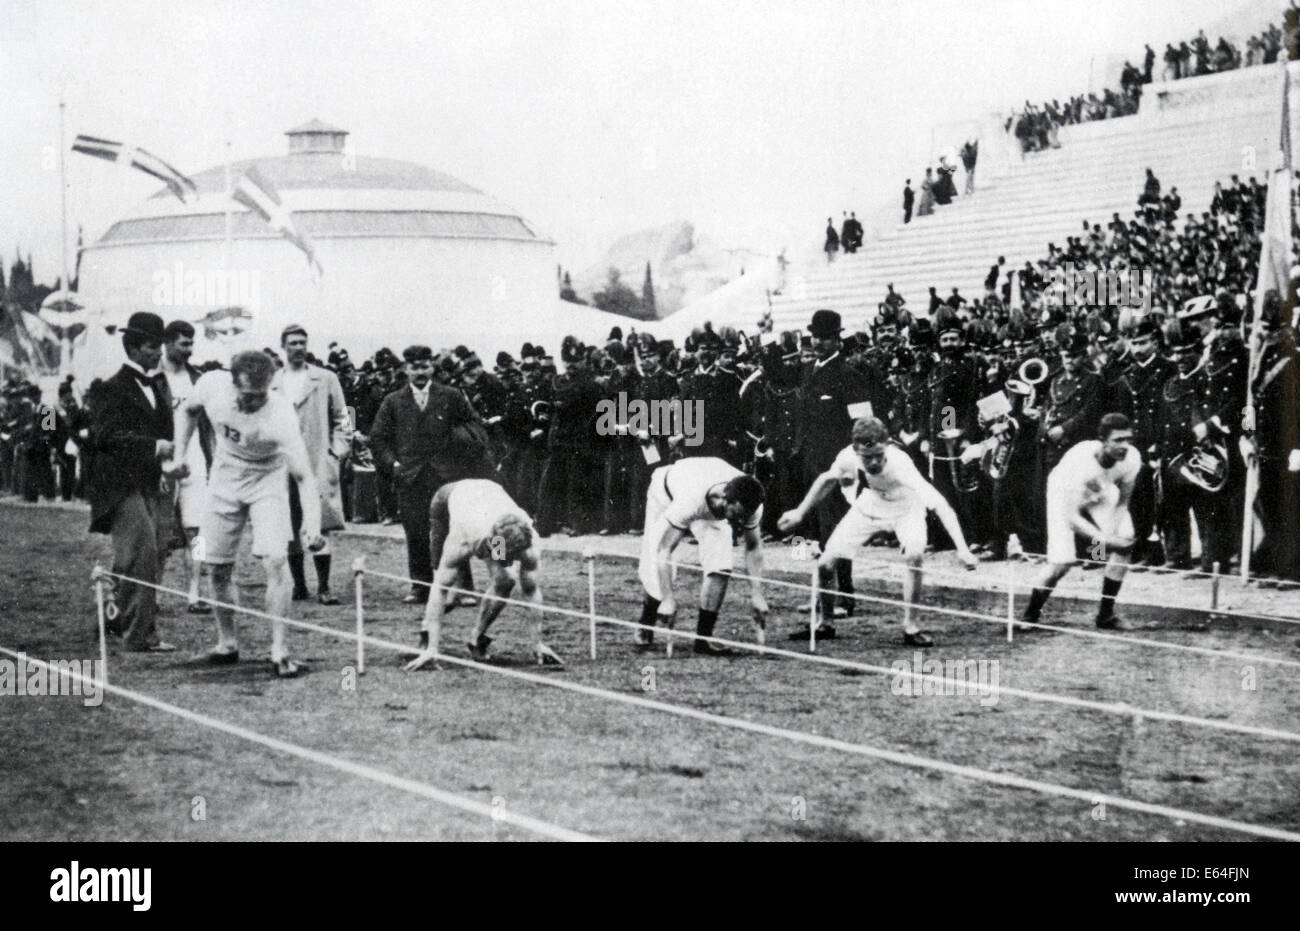 Jeux olympiques d'Athènes 1896. Début de la première épreuve de la course de 100 mètres des hommes. Voir la description ci-dessous Banque D'Images